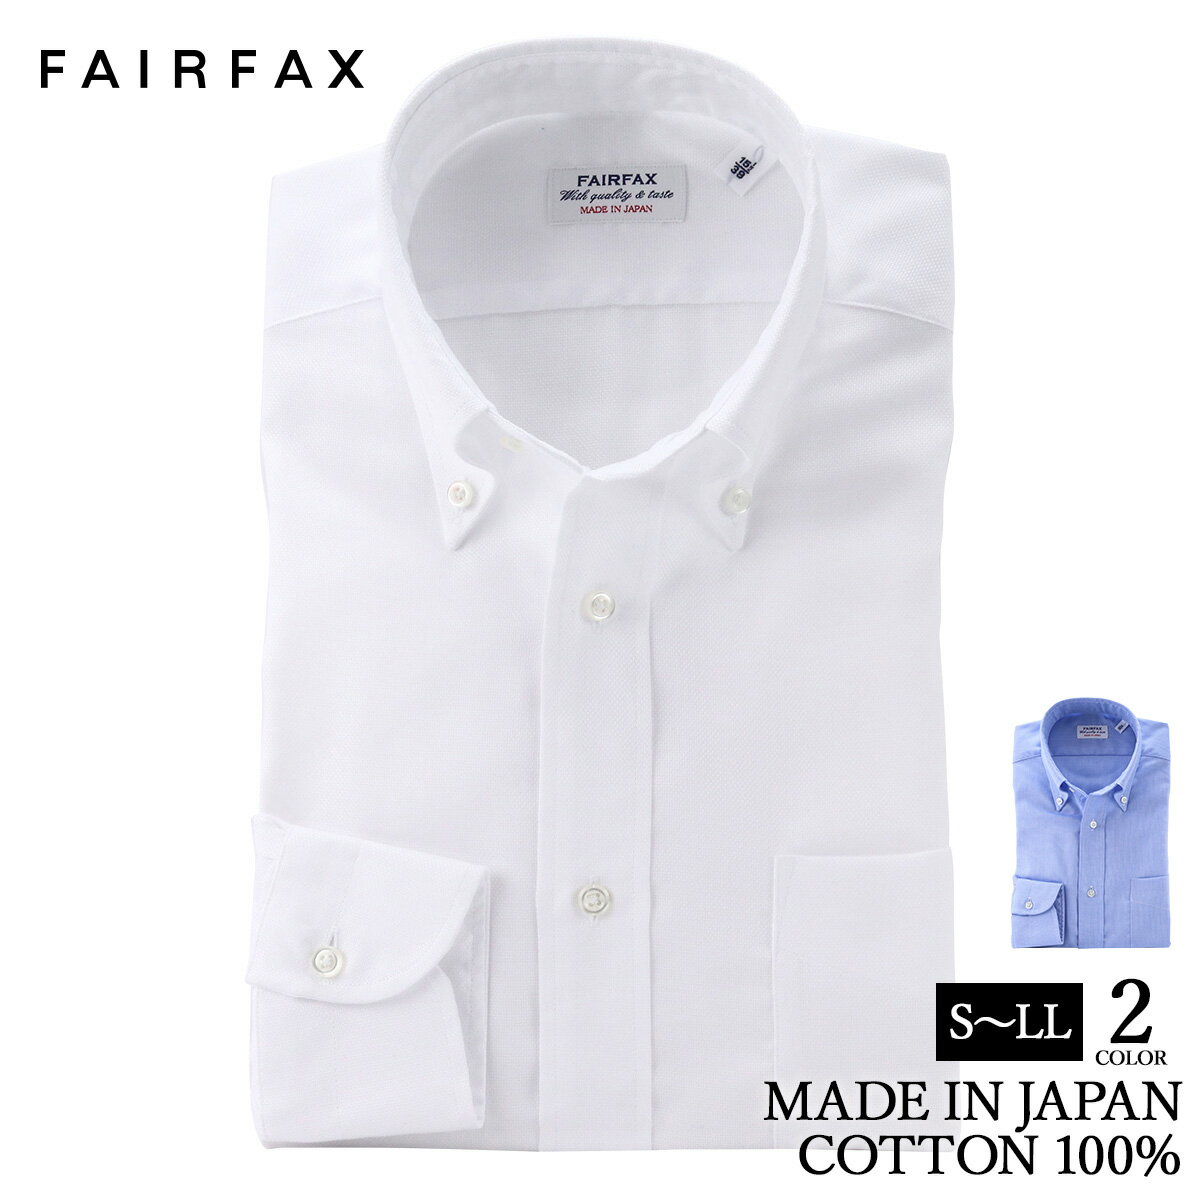 フェアファクス ビジネスシャツ メンズ ワイシャツ フェアファクス FAIRFAX 形態安定 ボタンダウンカラー ドレスシャツ 白無地 ロイヤルオックス 綿100% スリム 日本製 | 父の日 結婚式 メンズ ブランド おすすめ ネクタイ おしゃれ 日本 高級 男性 Yシャツ